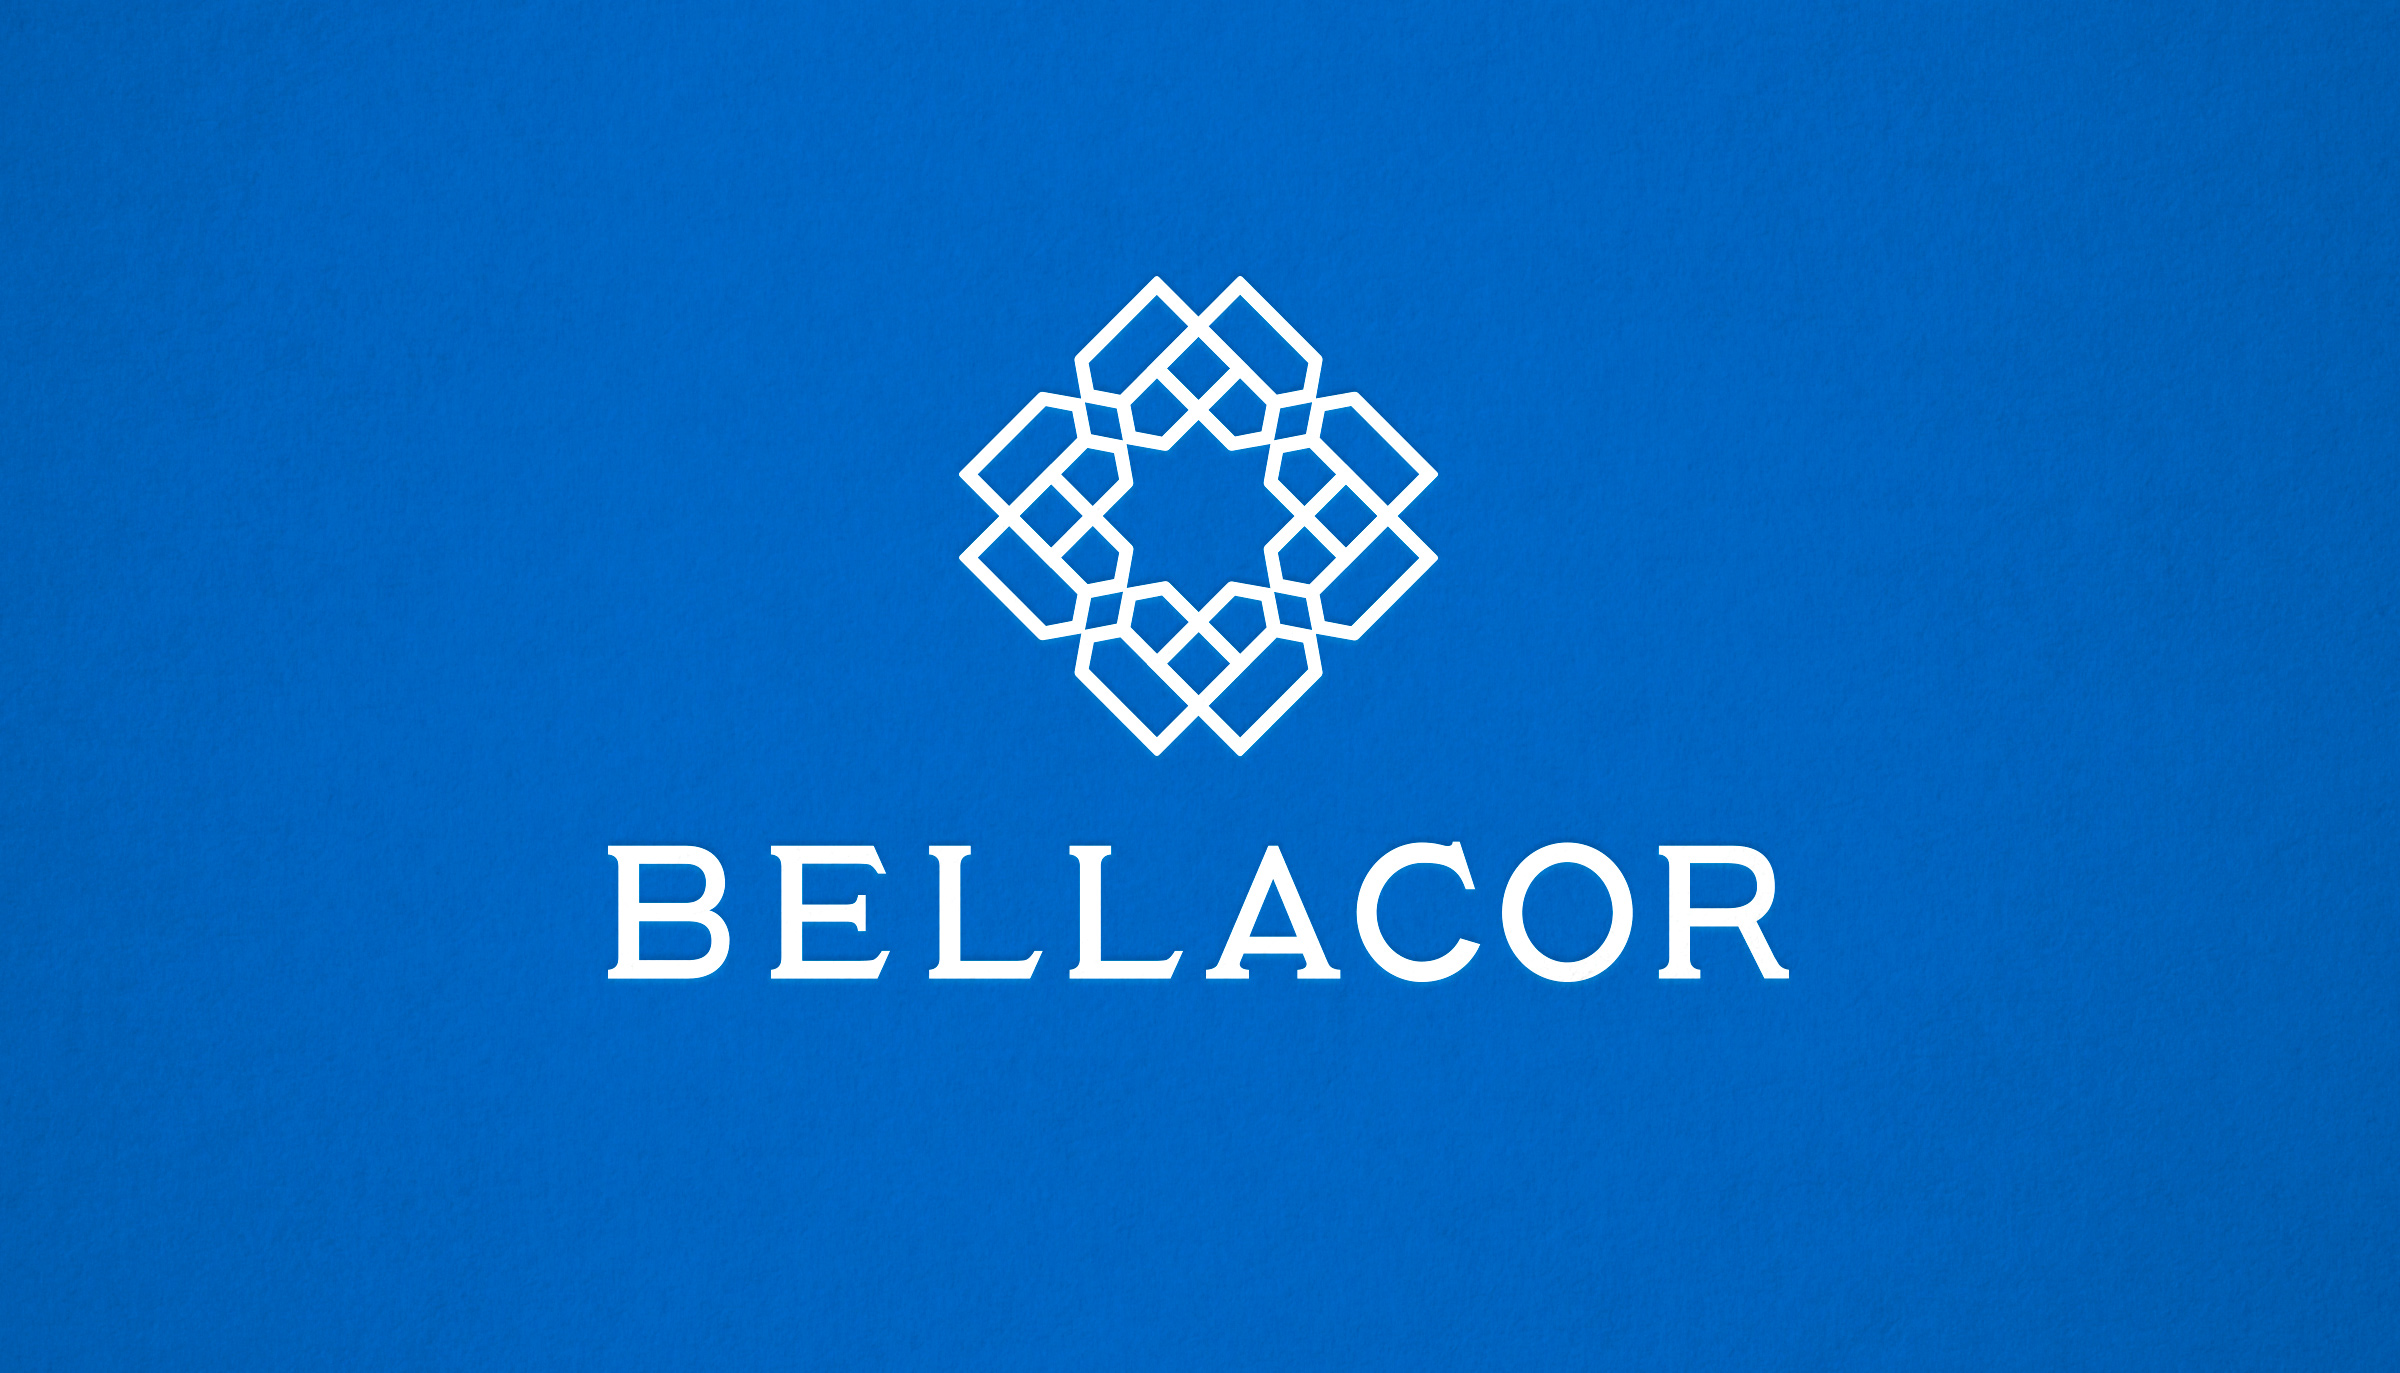 Bellacor logo designed by Werner Design Werks